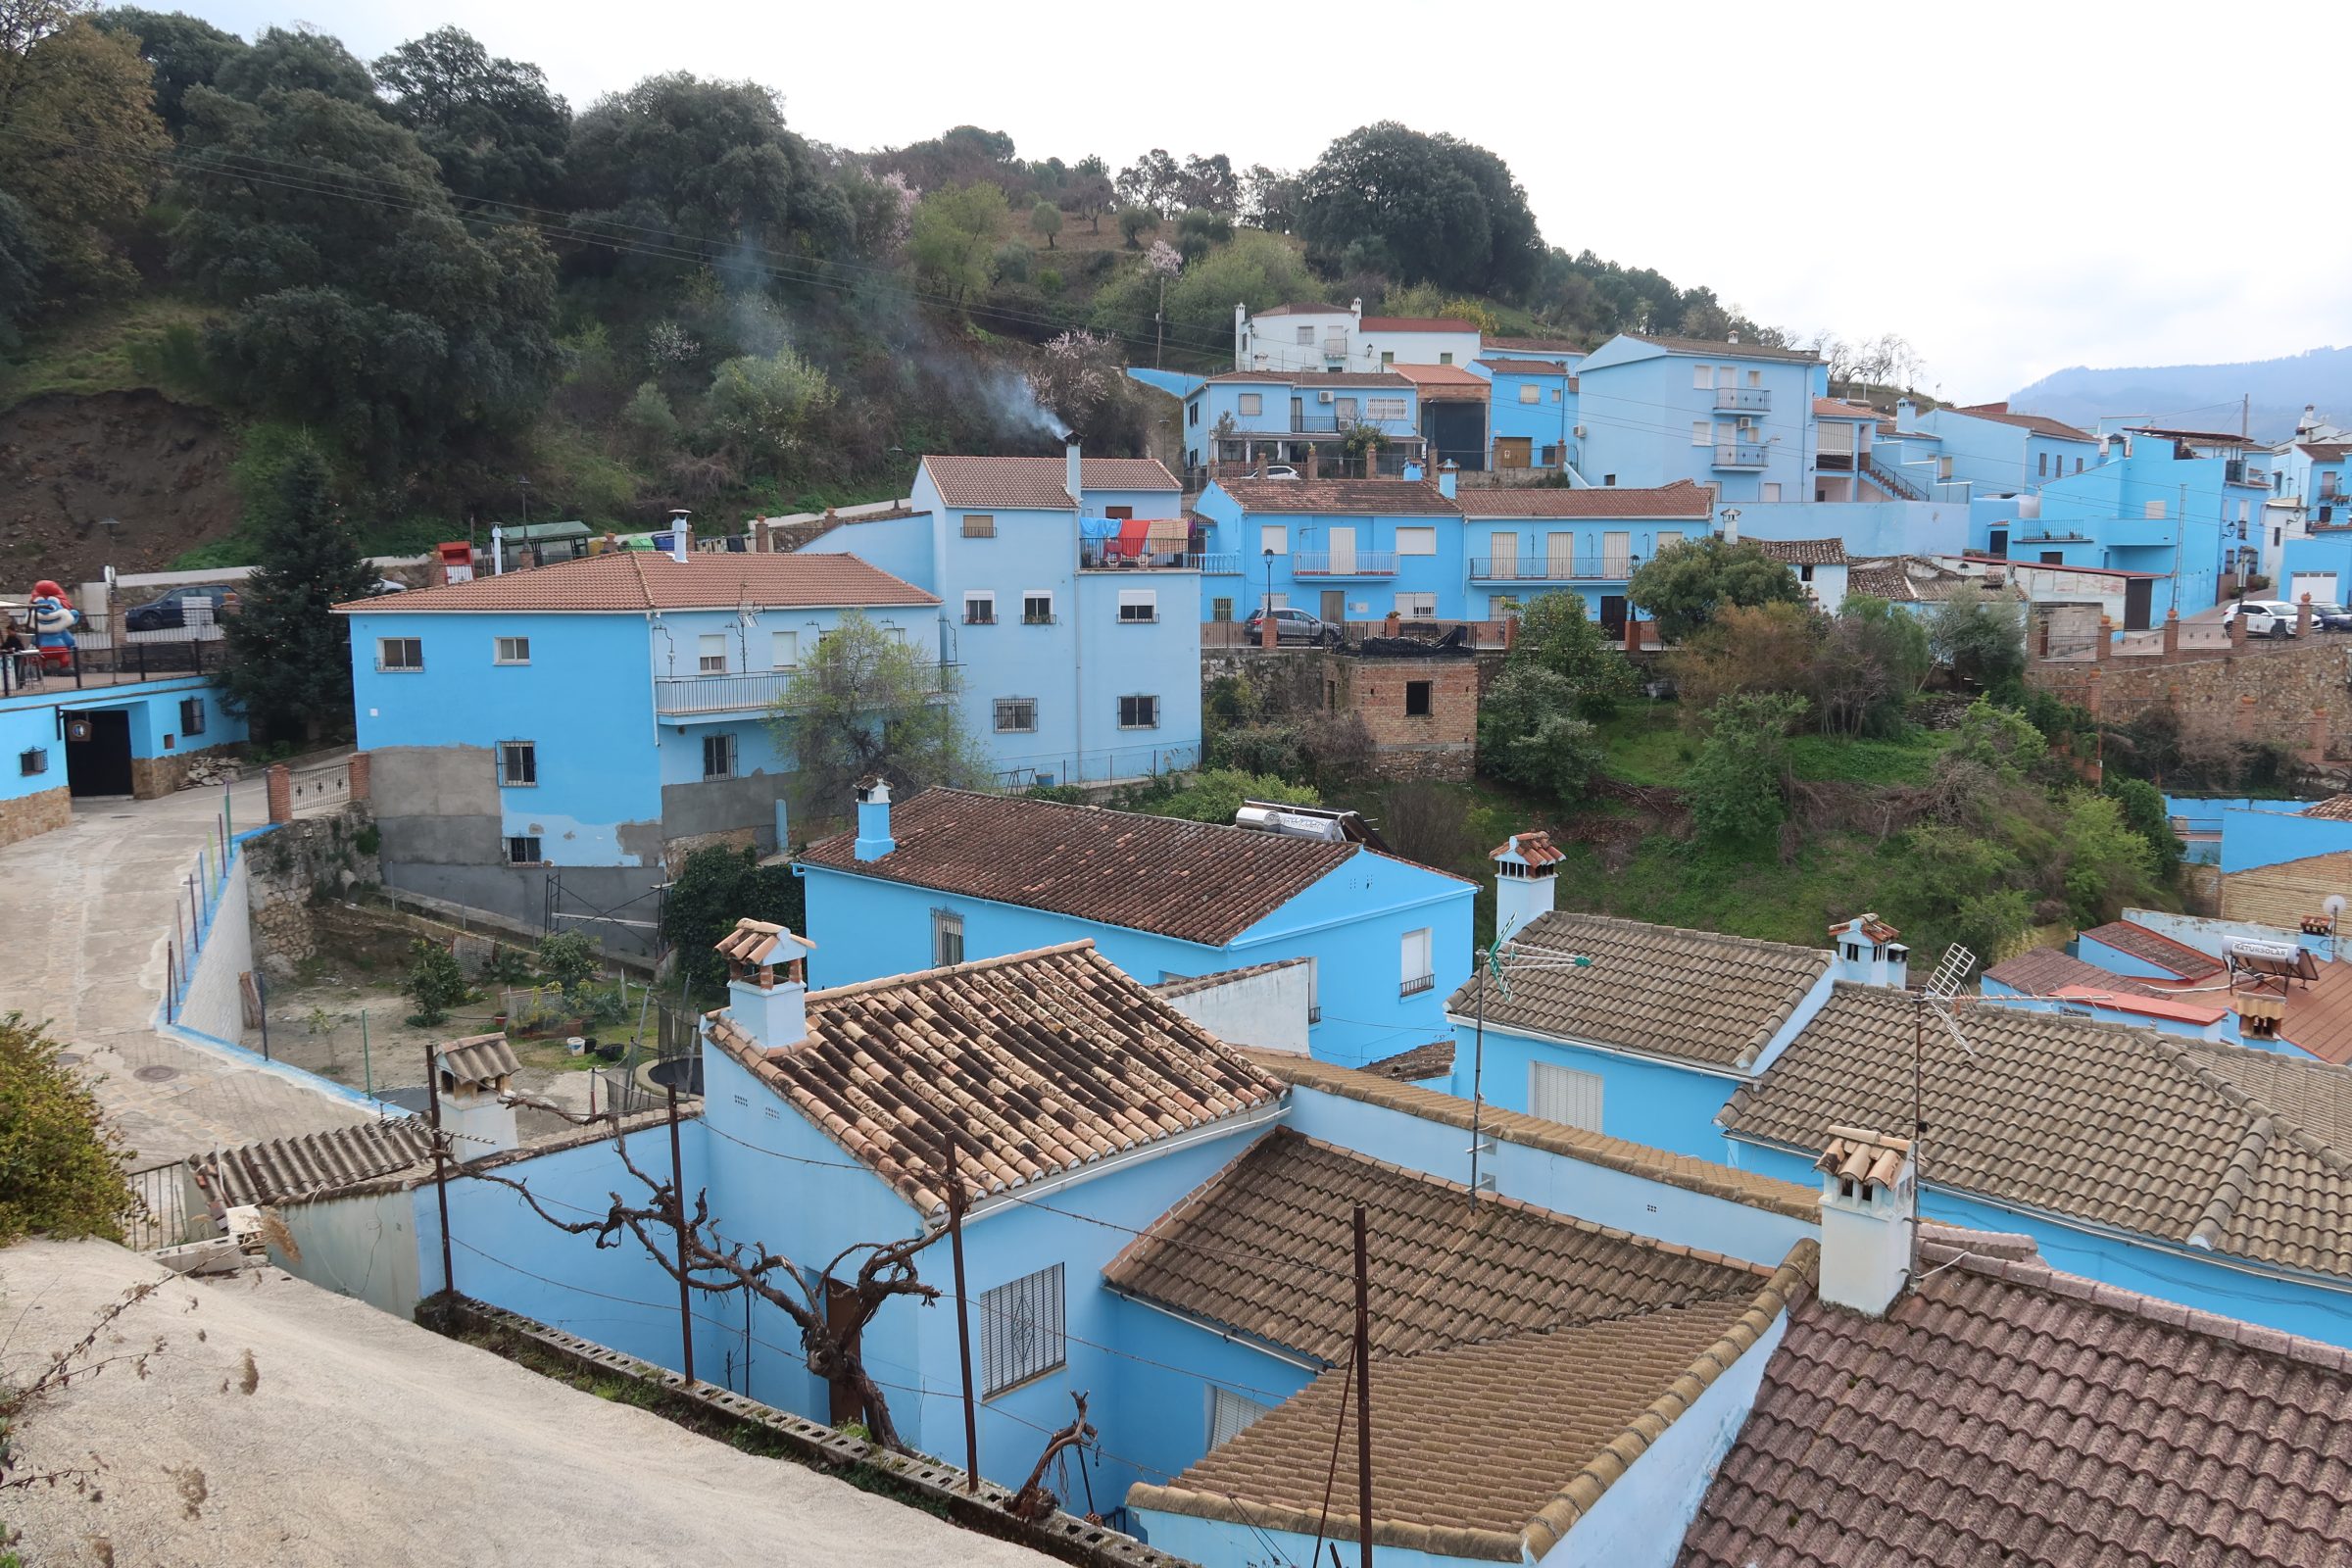 Júzcar, smølfelandsbyen med en smølf til venstre | Autocamper tips og steder af interesse i det sydlige Spanien